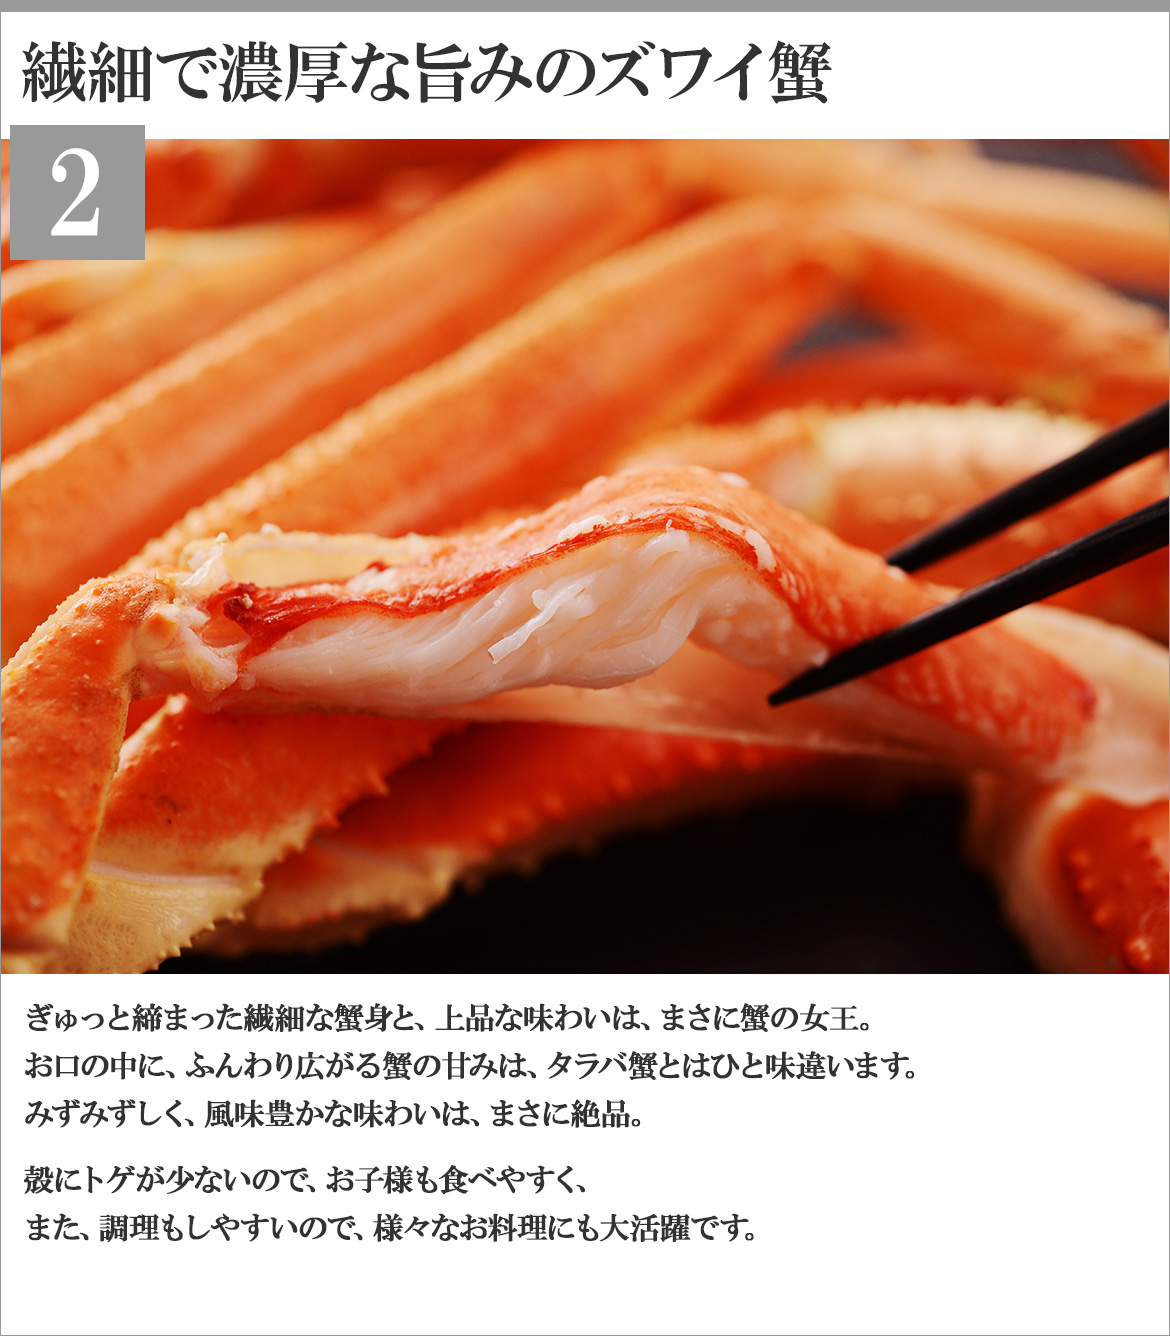 三大がにセット(K-01)北海道海鮮セット タラバガニ・毛ガニ・ズワイガニ 蟹食べ比べ お取り寄せ ギフト 送料無料